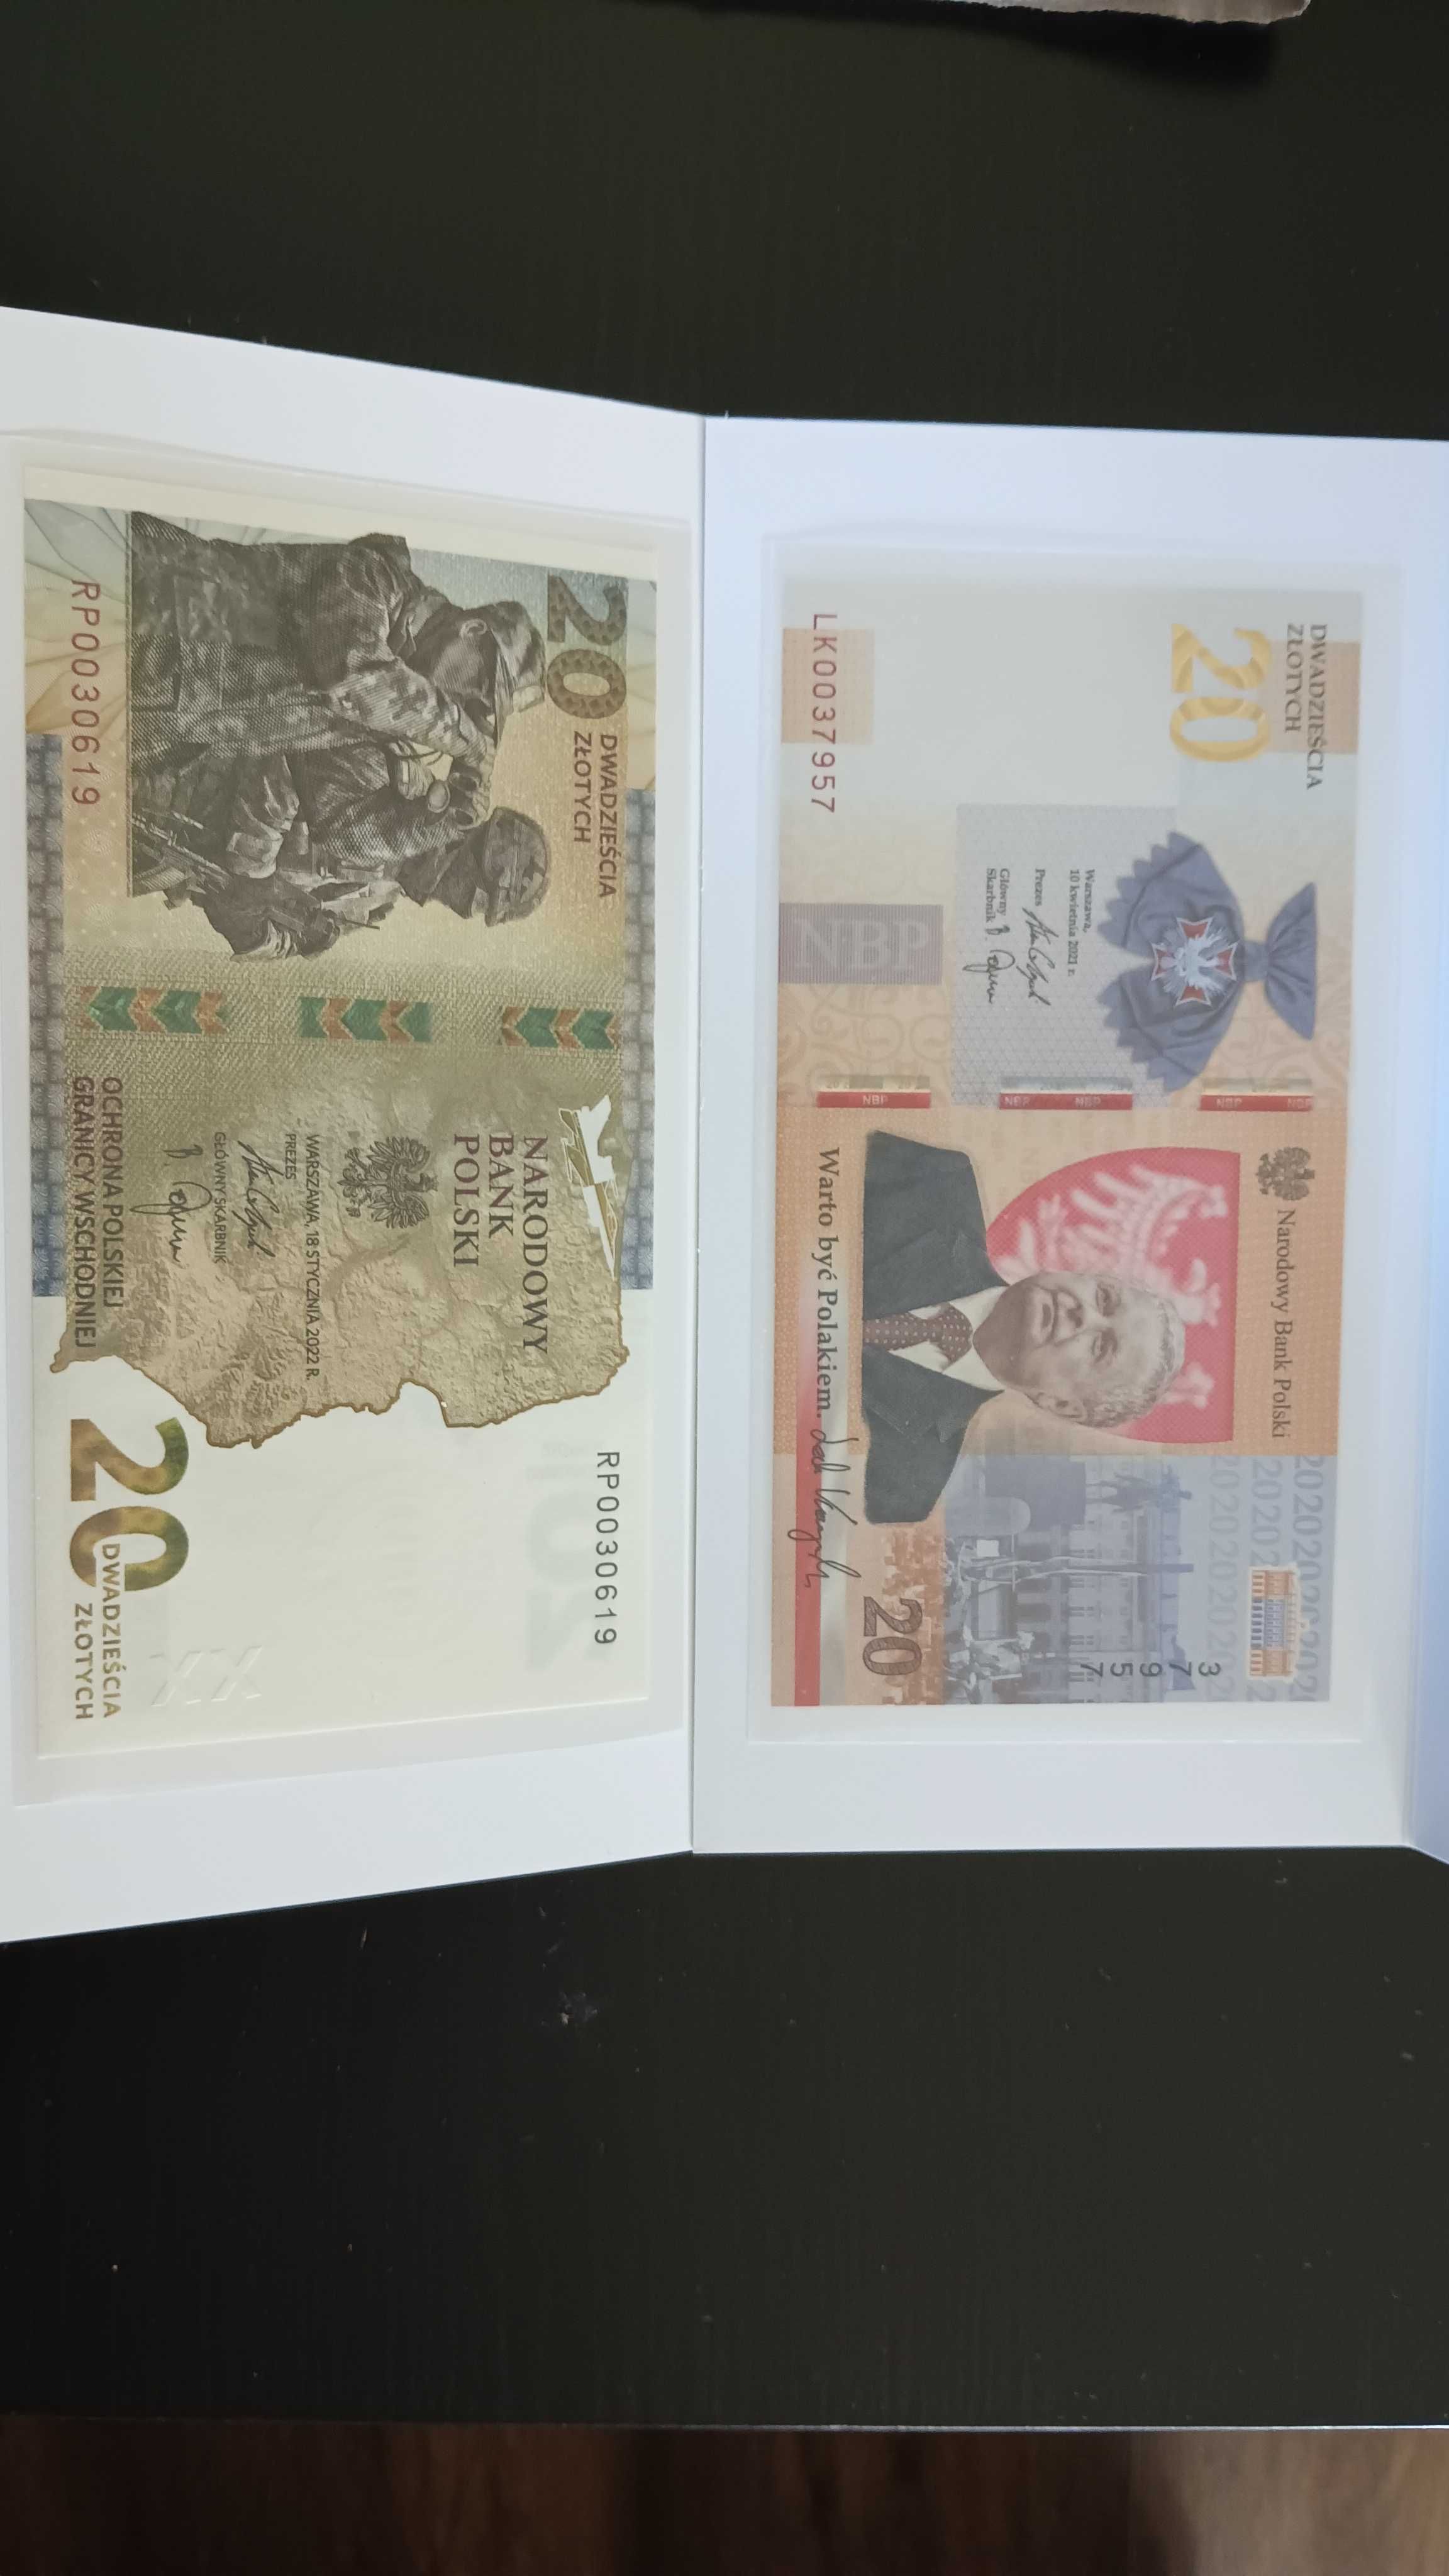 4 banknoty kolekcjonerskie Lech Kaczyński,Ochr
 Pol. Gr. Wsch.i Kopern